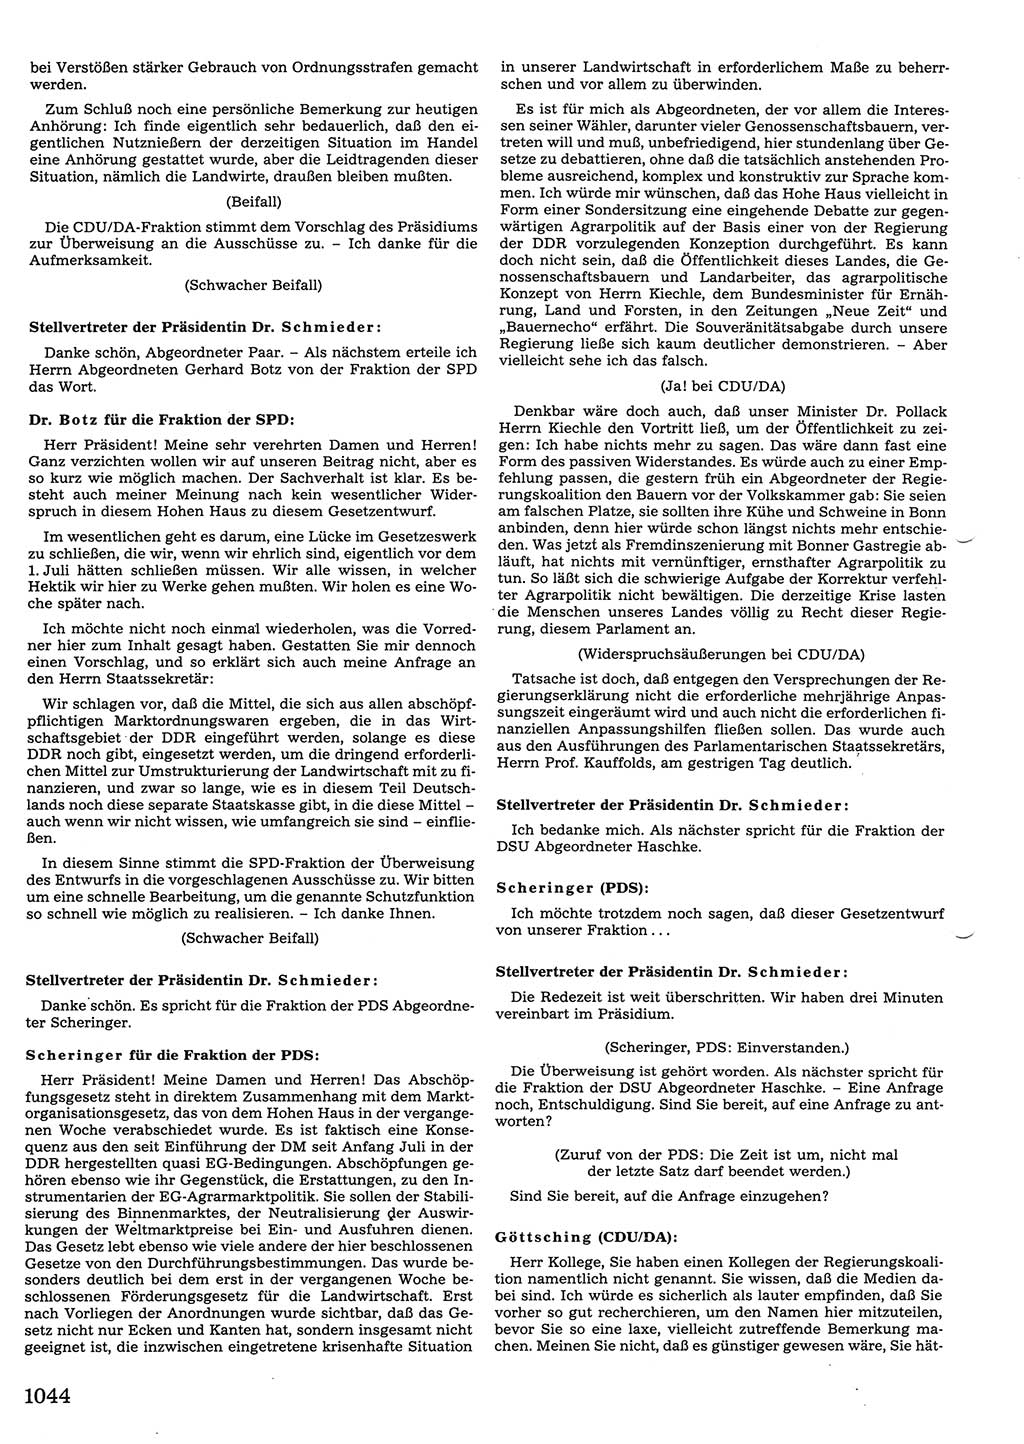 Tagungen der Volkskammer (VK) der Deutschen Demokratischen Republik (DDR), 10. Wahlperiode 1990, Seite 1044 (VK. DDR 10. WP. 1990, Prot. Tg. 1-38, 5.4.-2.10.1990, S. 1044)